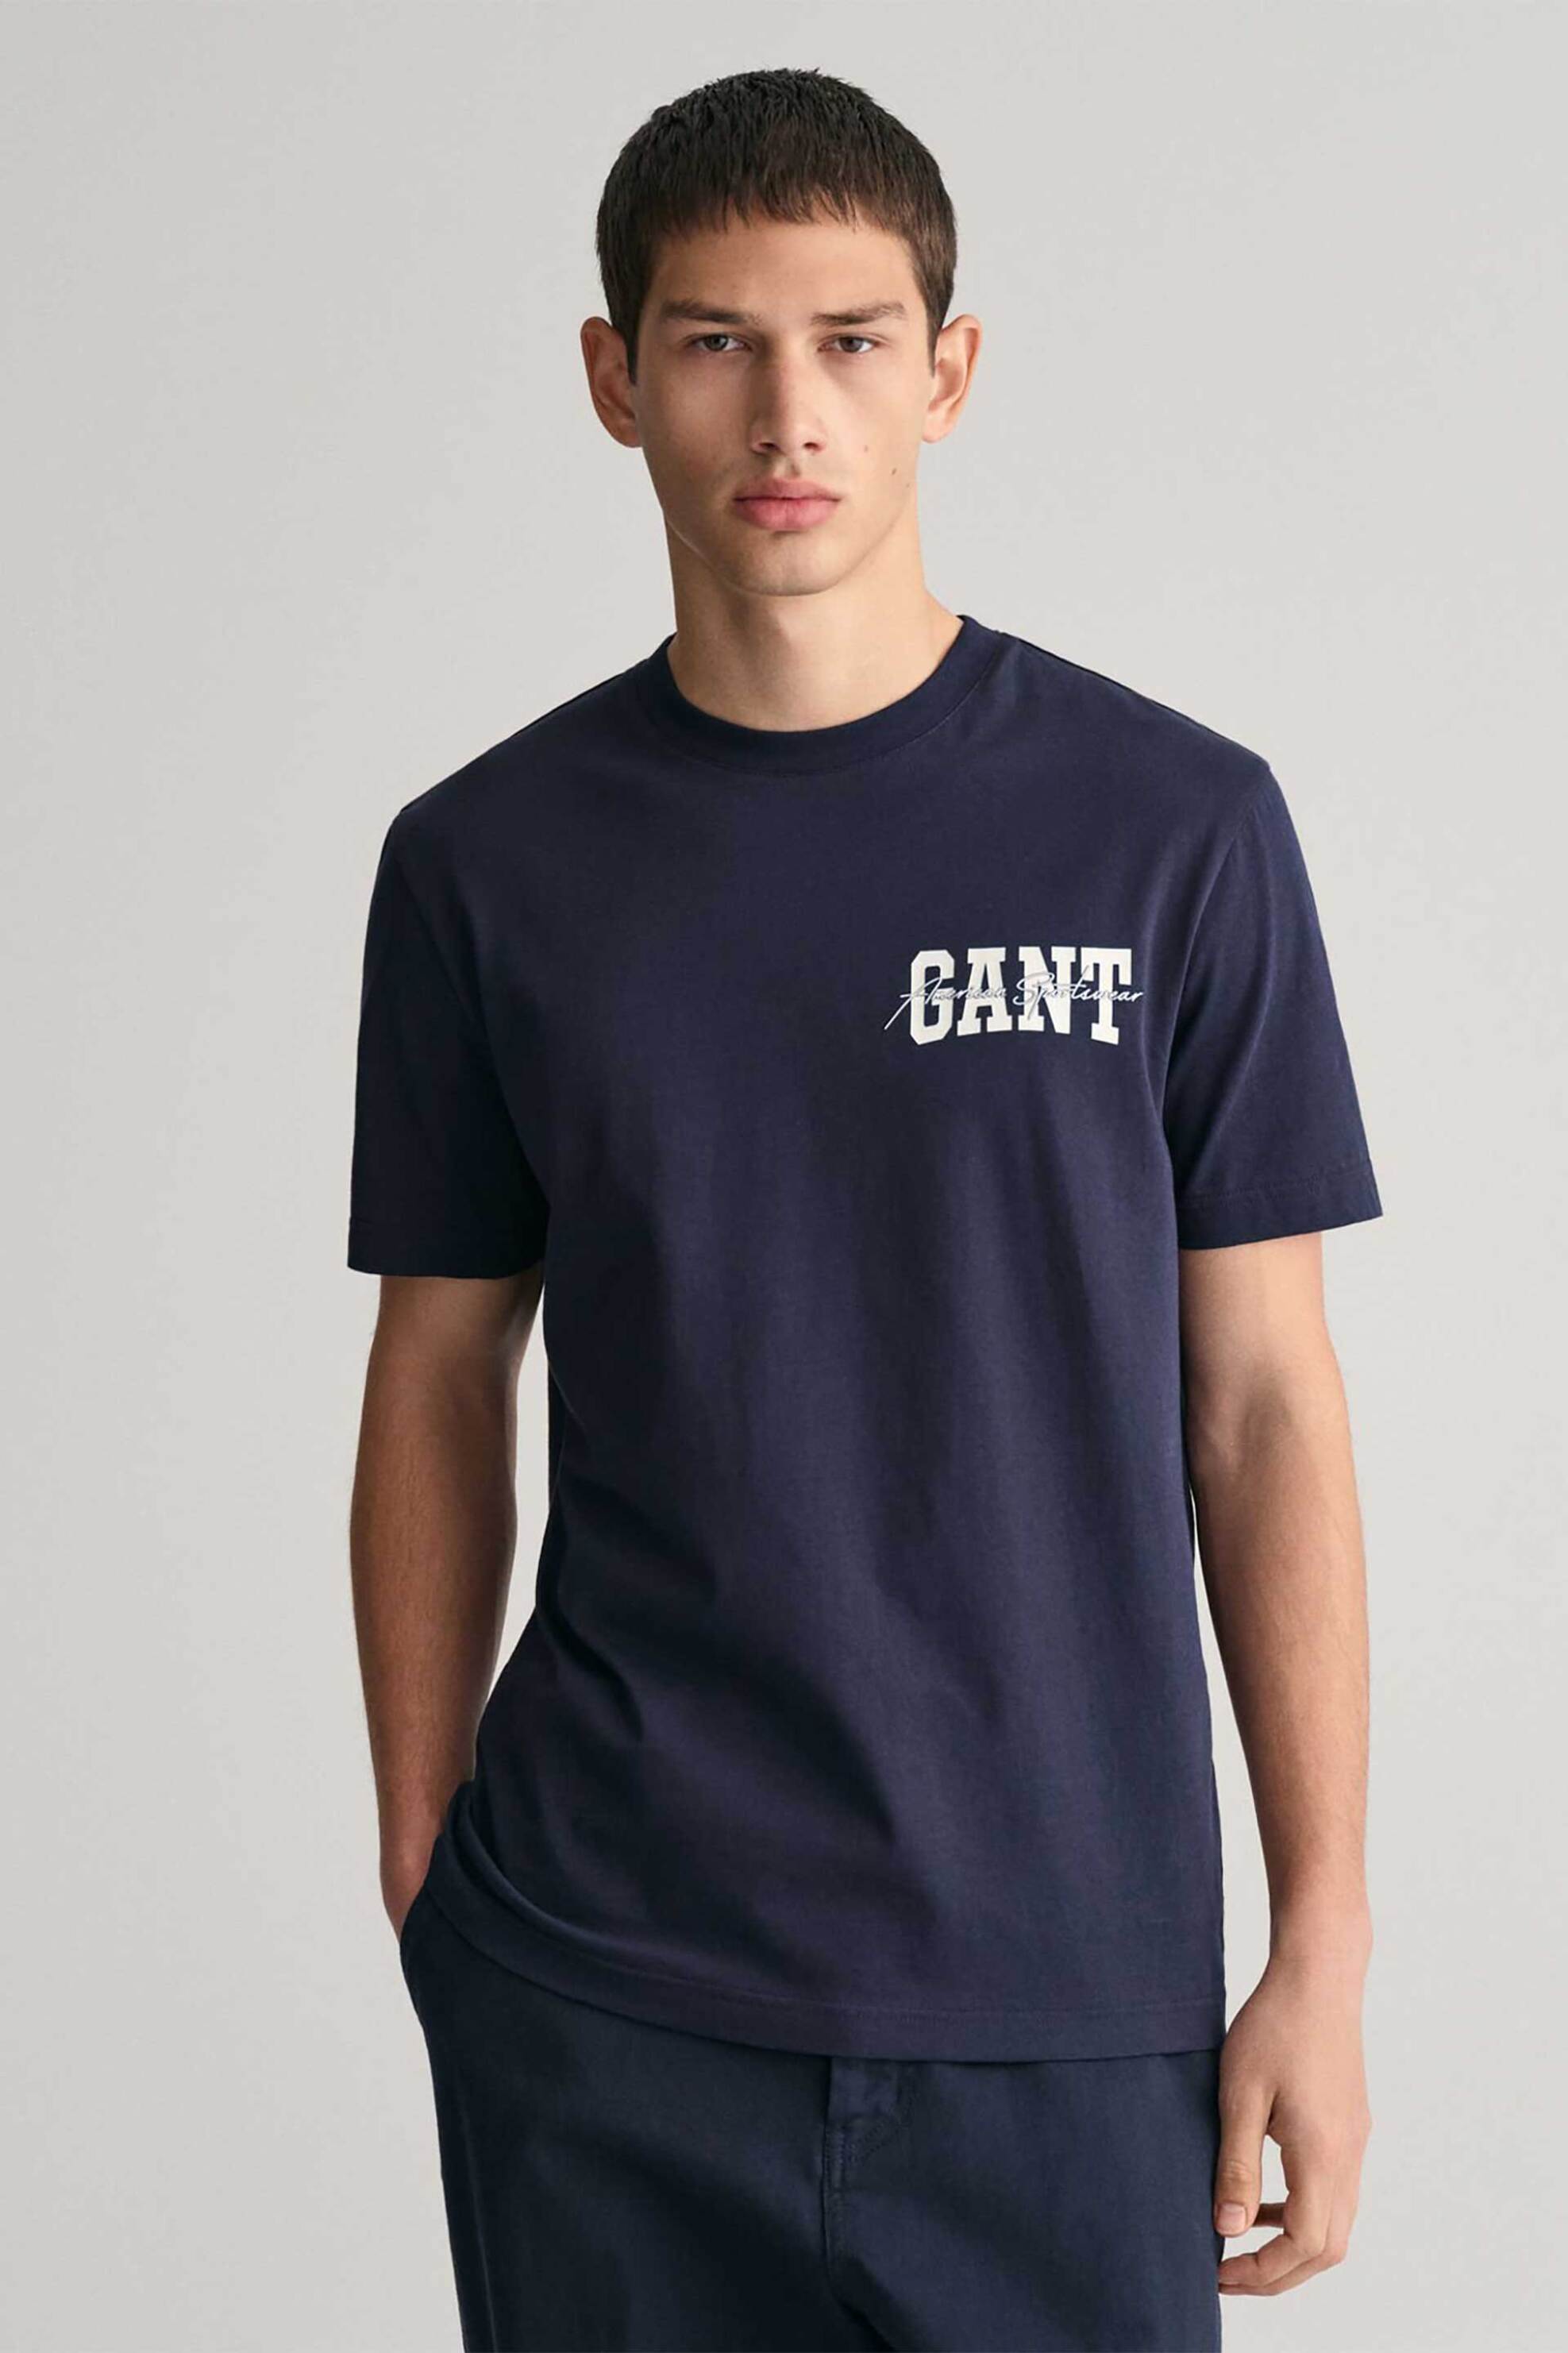 Ανδρική Μόδα > Ανδρικά Ρούχα > Ανδρικές Μπλούζες > Ανδρικά T-Shirts Gant ανδρικό T-shirt με arch script graphic print Regular Fit - 2033016 Μπλε Σκούρο